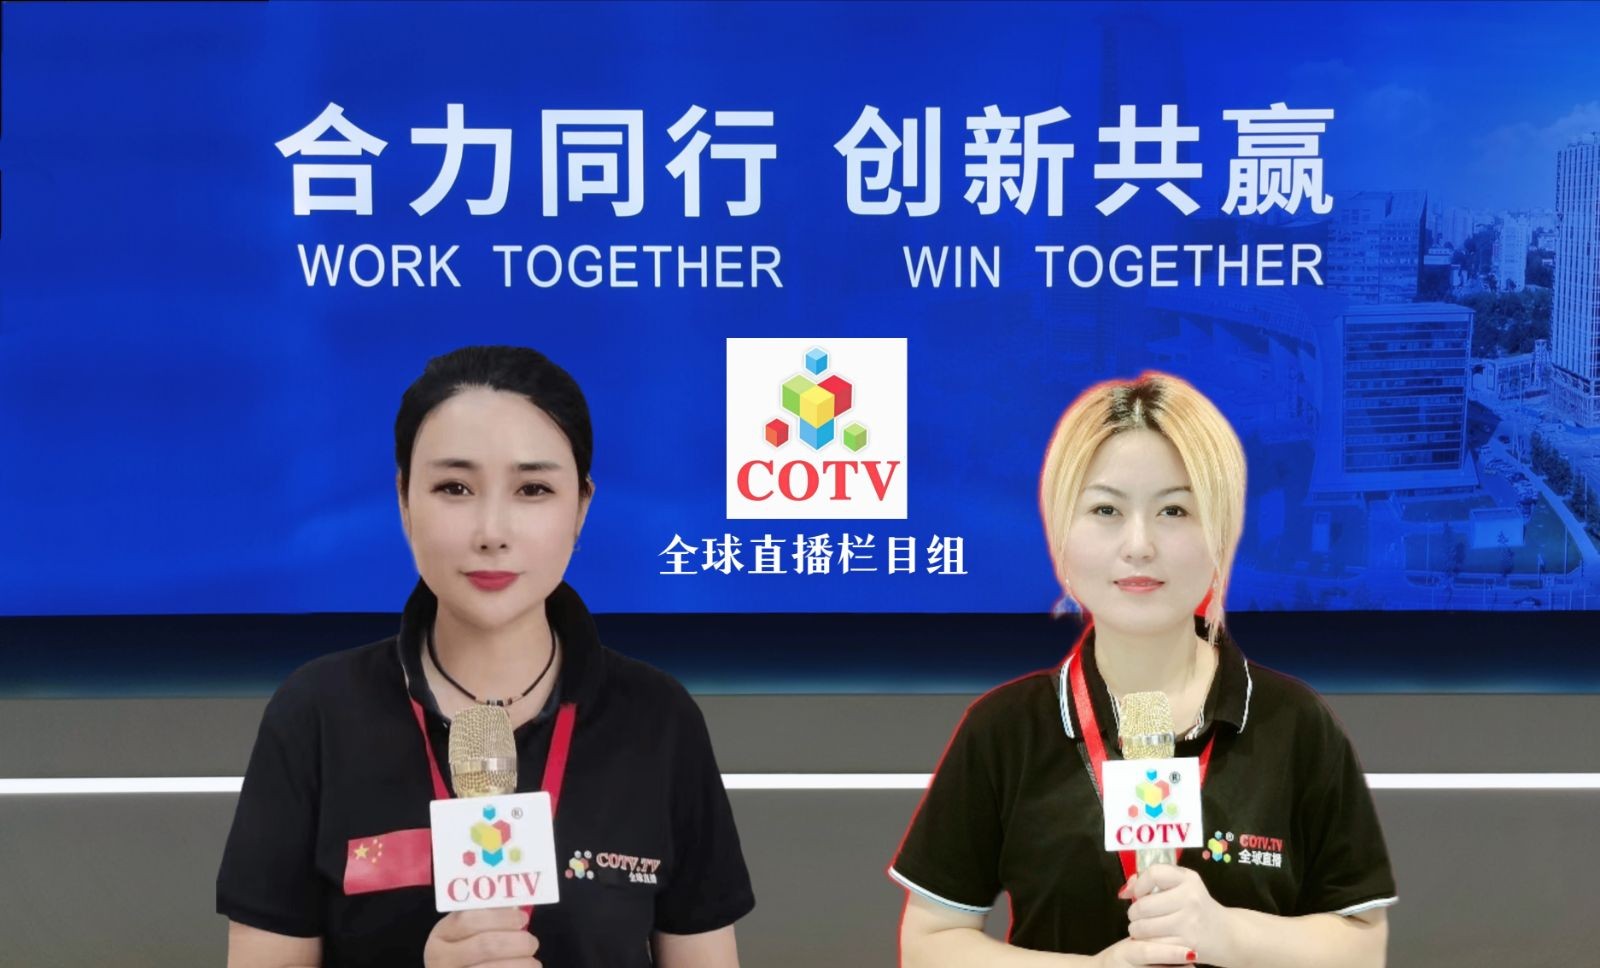 新热点-中网TV COTV 荣获"互联网电视十大影响力品牌"